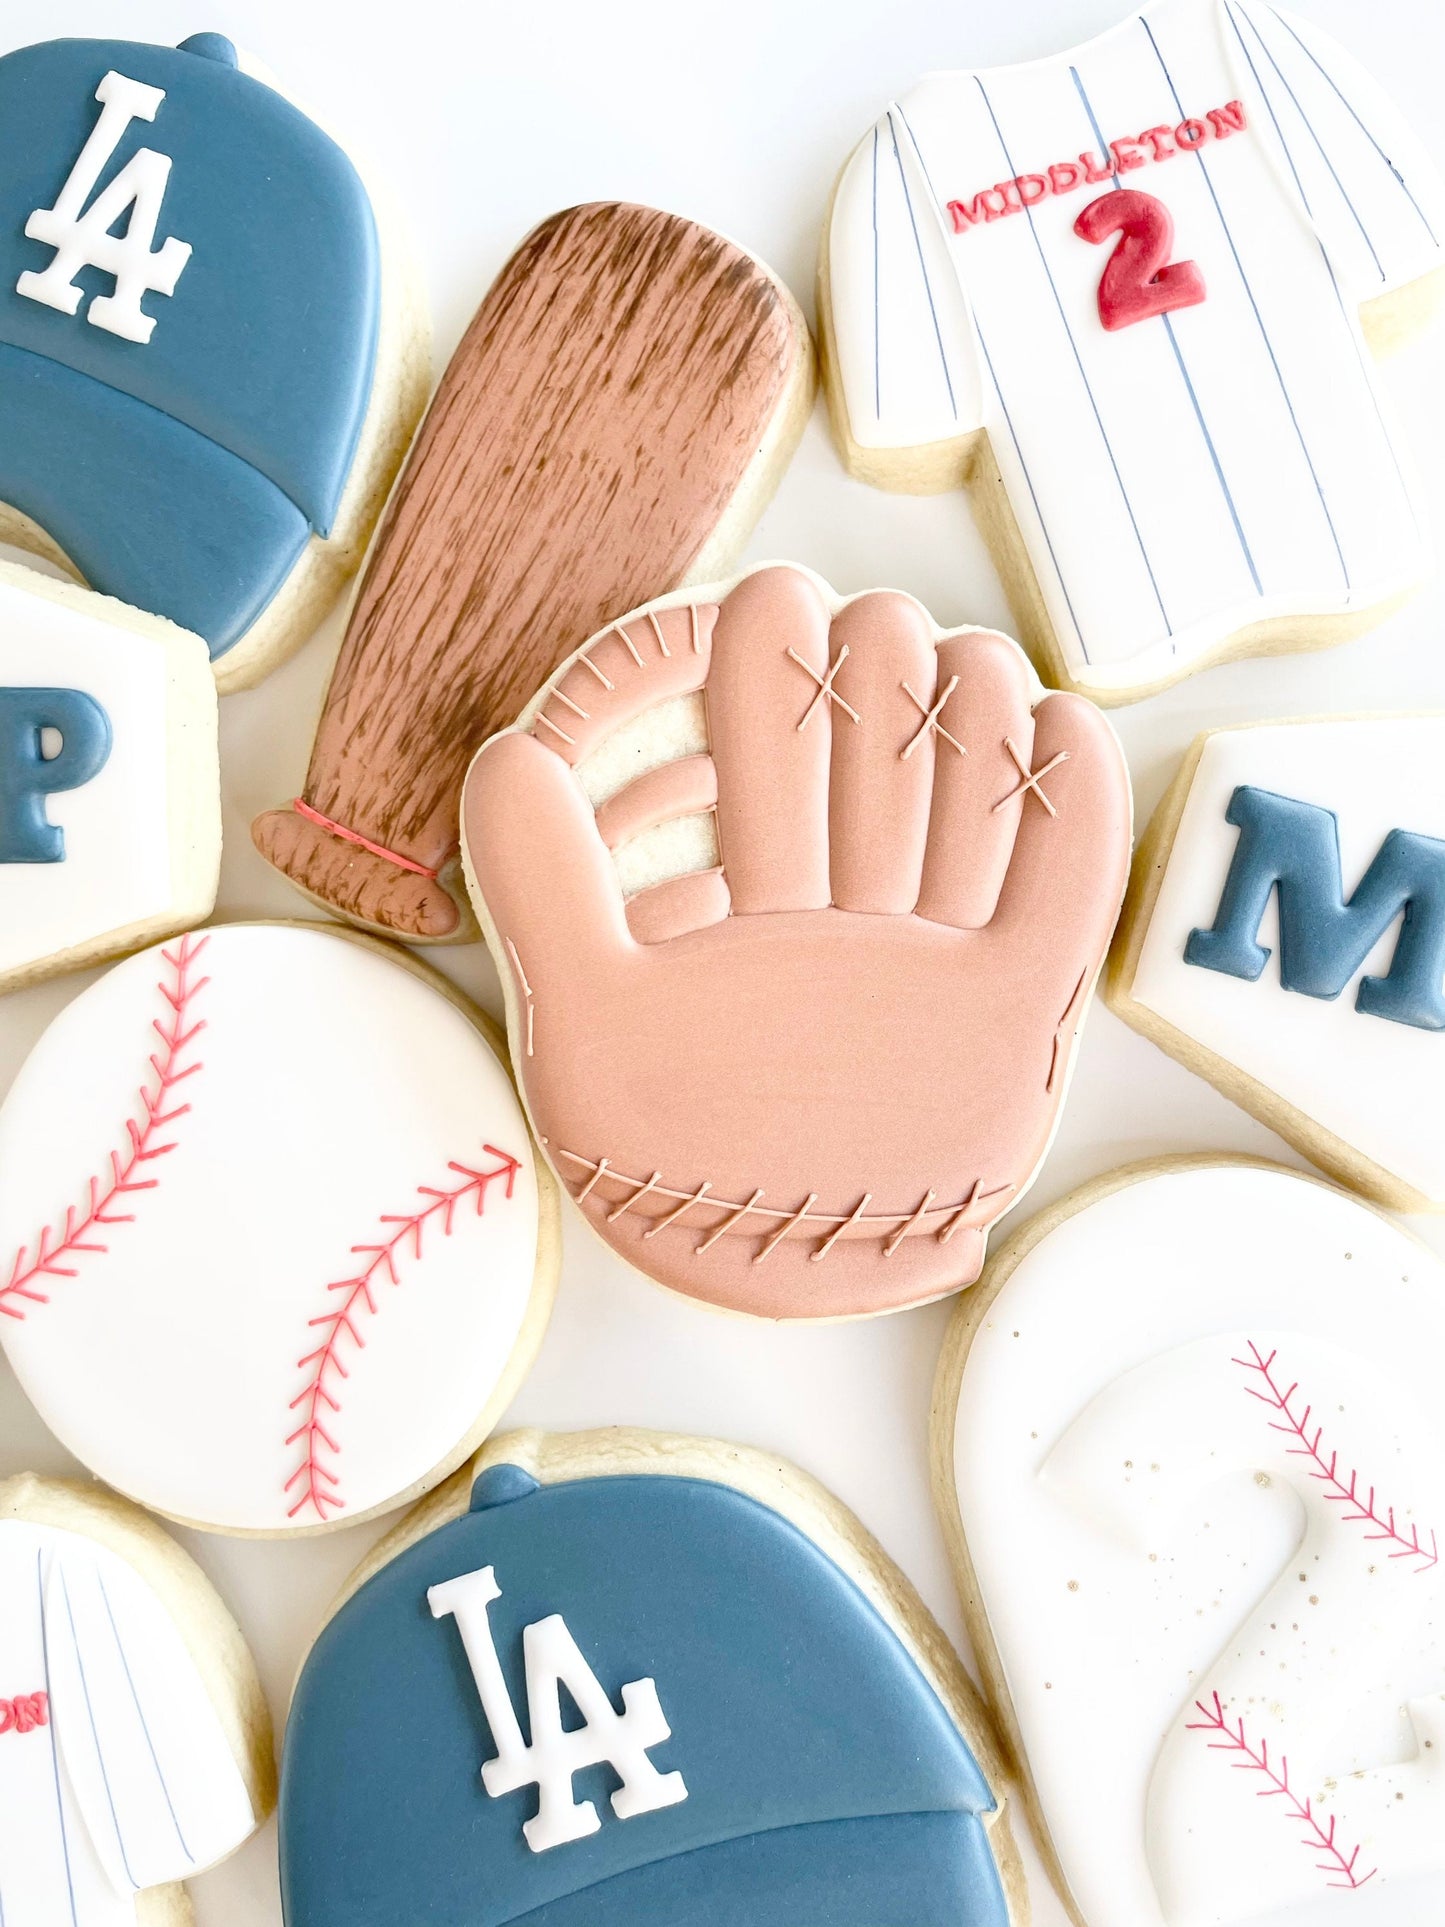 Baseball Glove Cookie Cutter